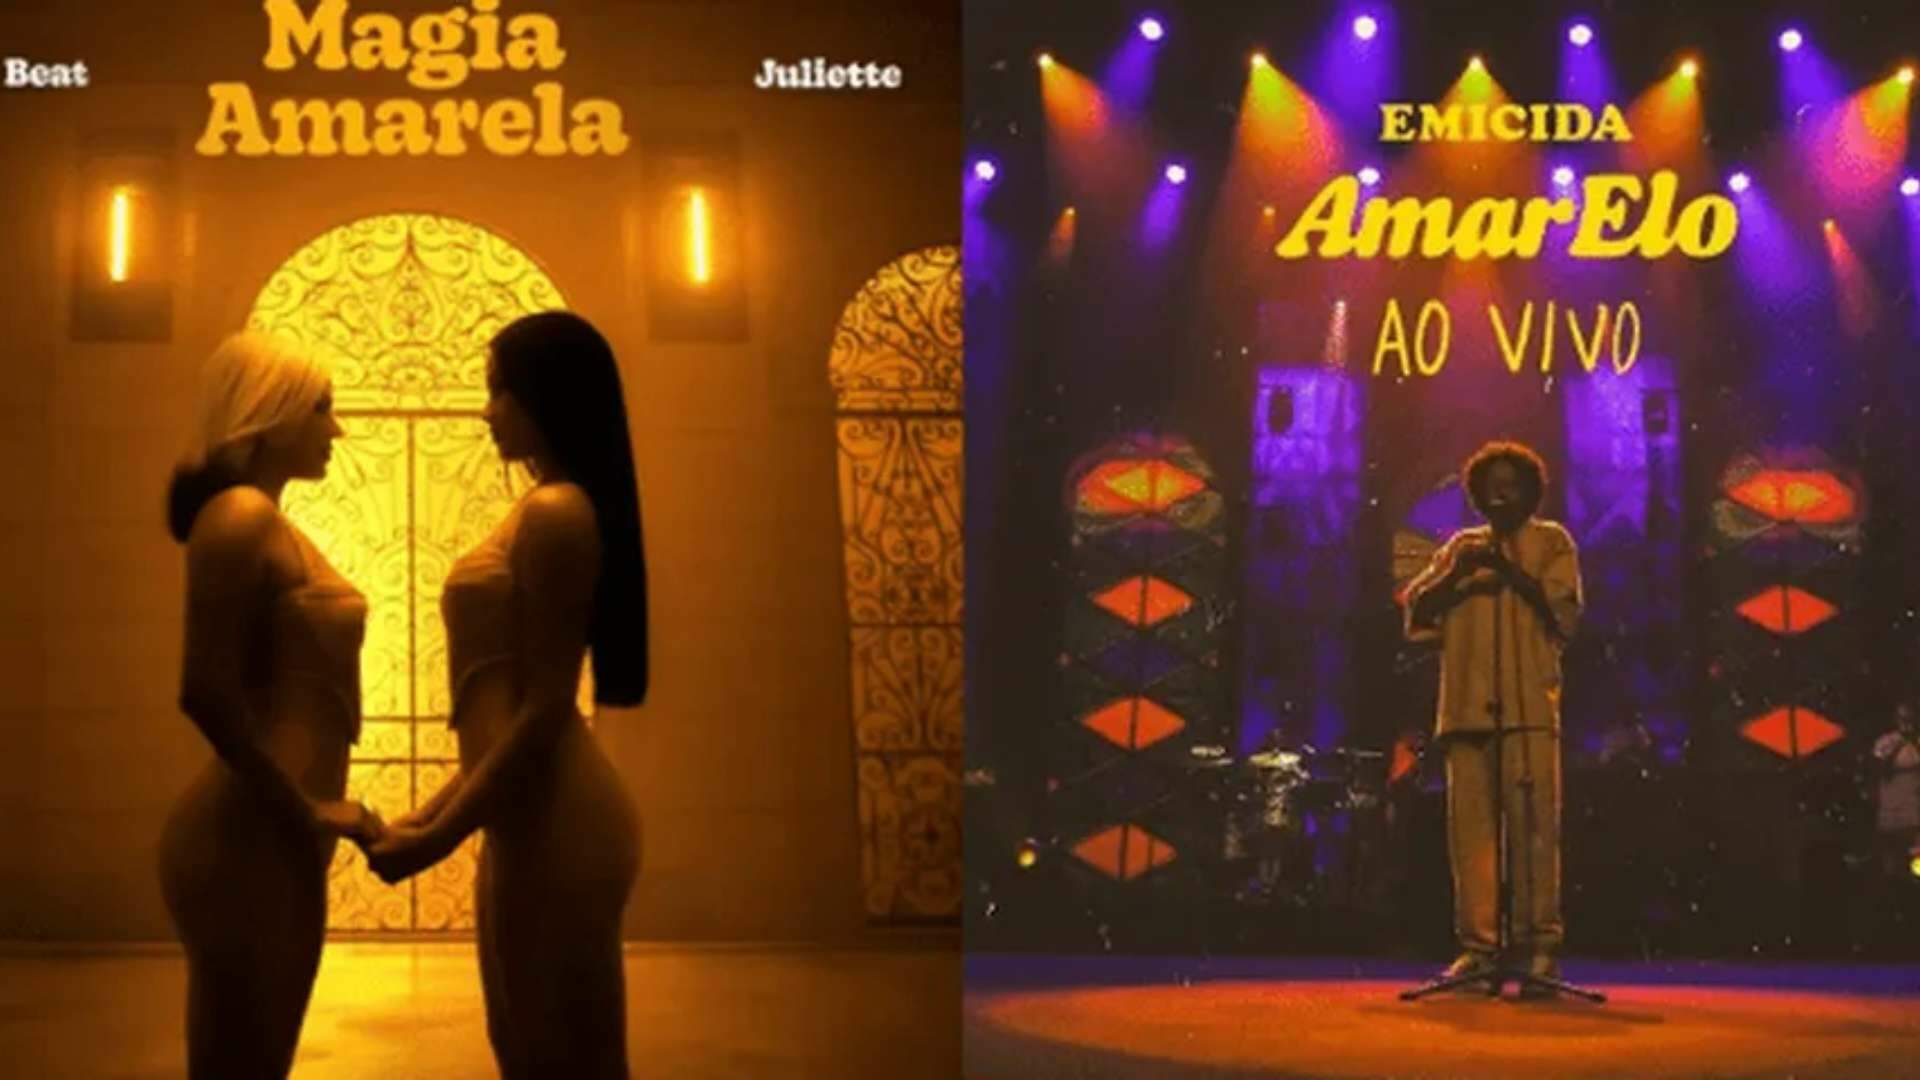 Juliette e Duda Beat fazem pronunciamento inusitado após serem acusadas de plágio por Emicida - Metropolitana FM